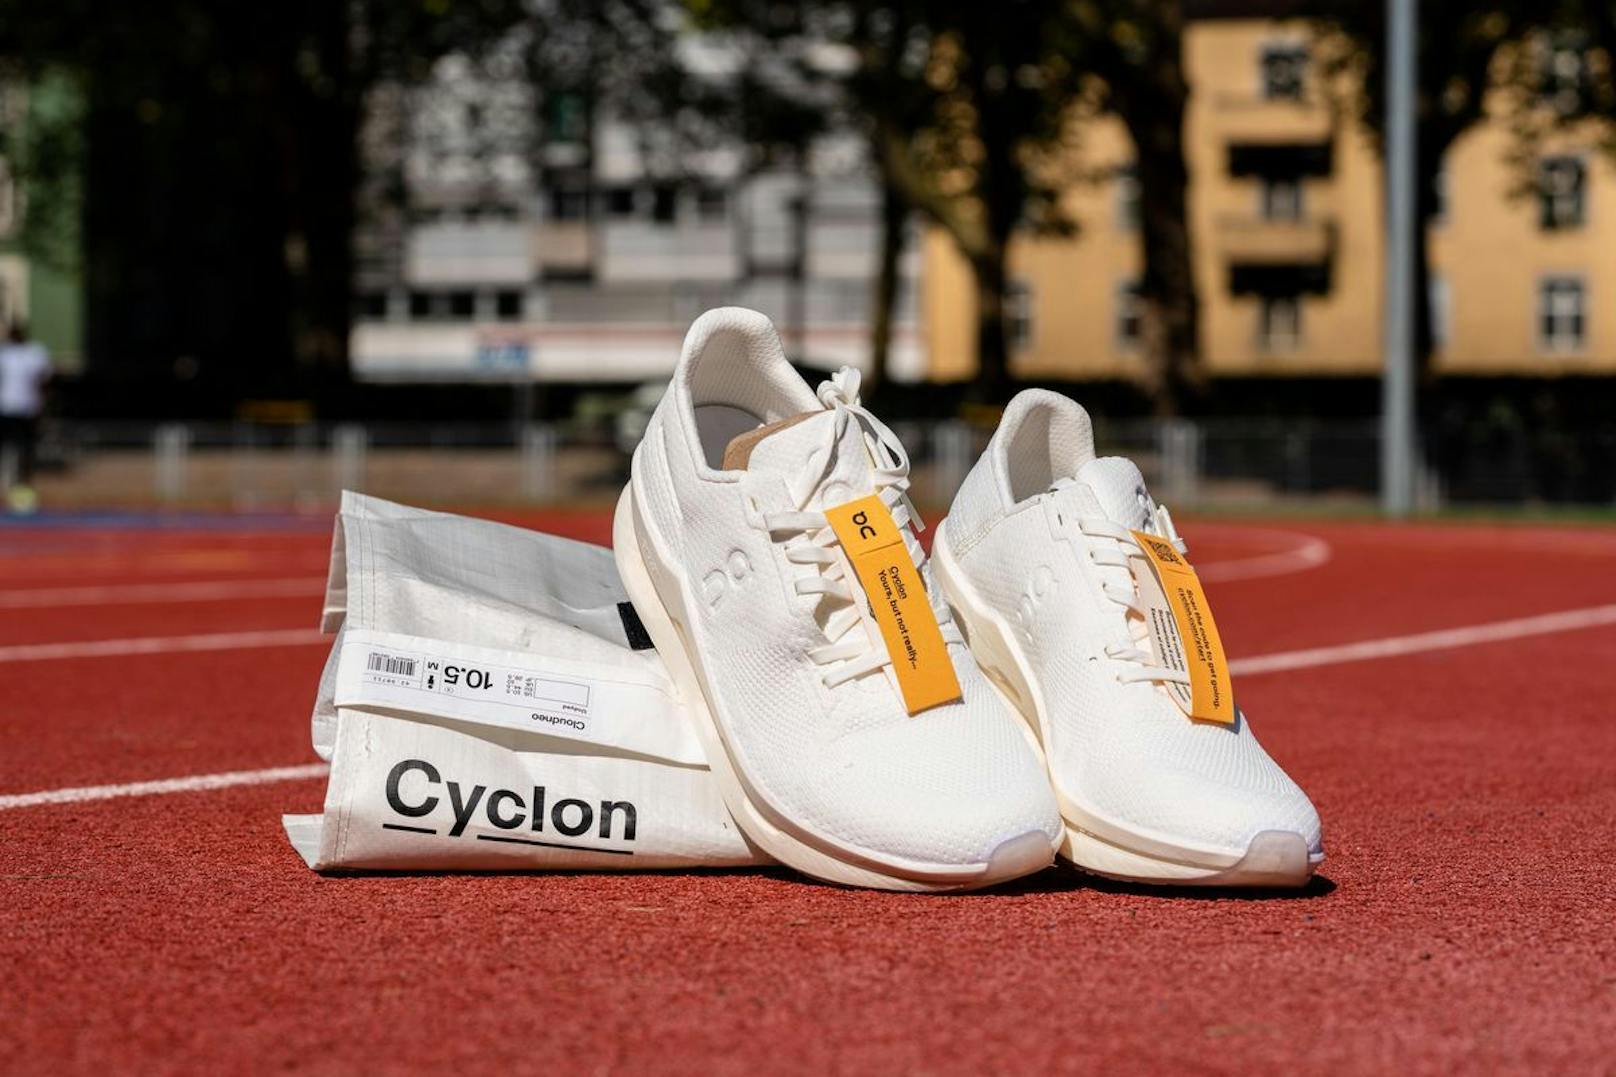 On lanciert den Schuh "Cloudneo" in der Schweiz und verkauft diesen im Abo-Modell namens "Cyclon".